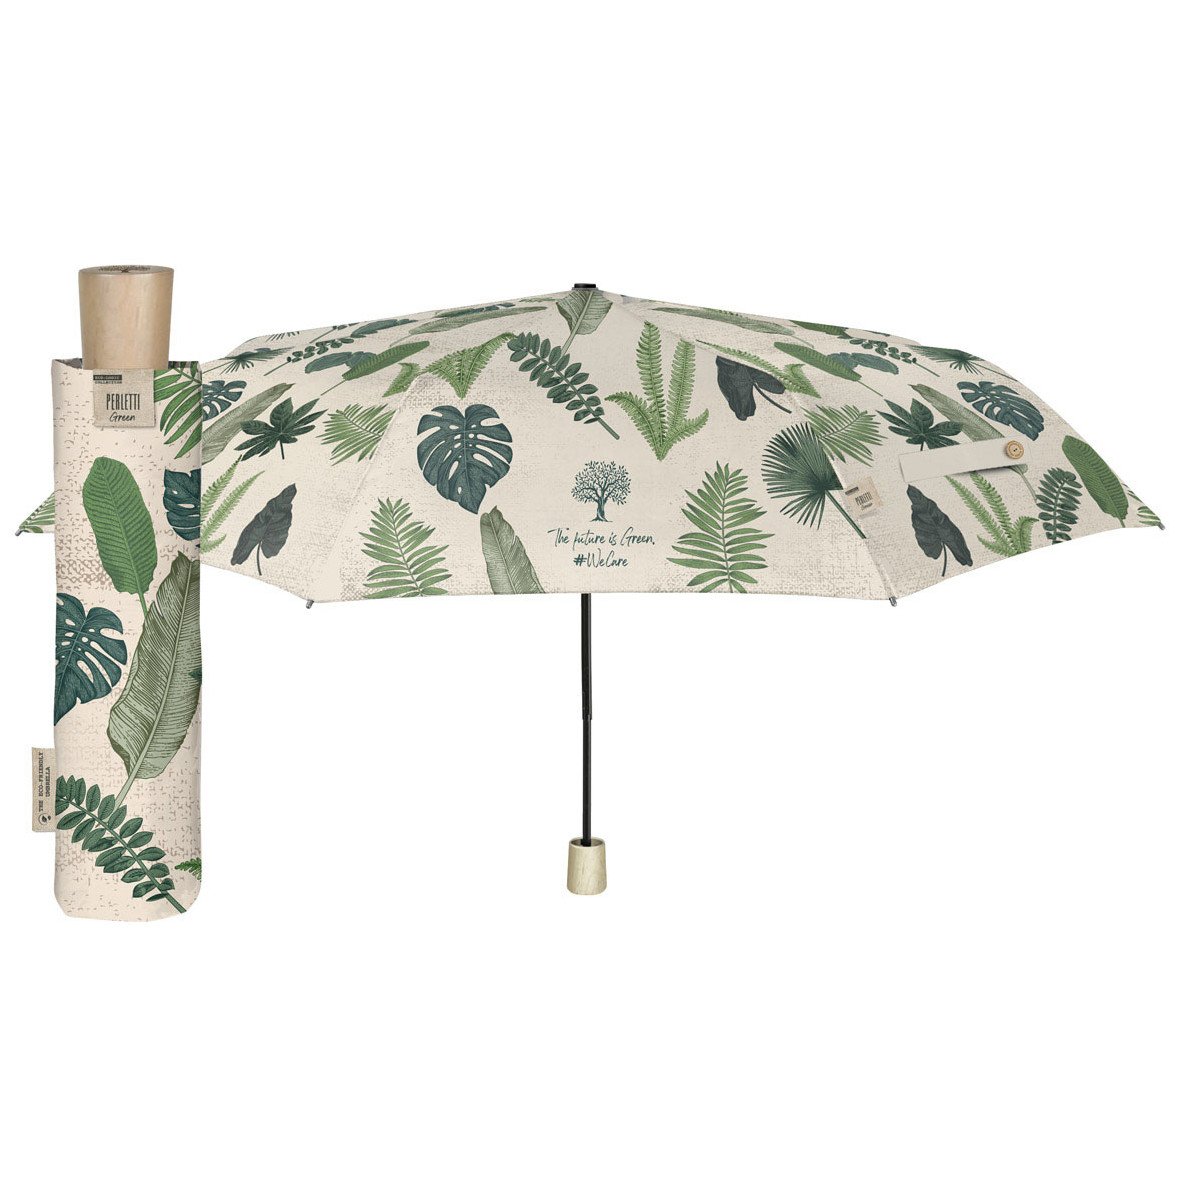 Paraguas plegable Colección Hojas Verdes - Paraguas Originales, Paraguas Mujer - Que puedo Regalar